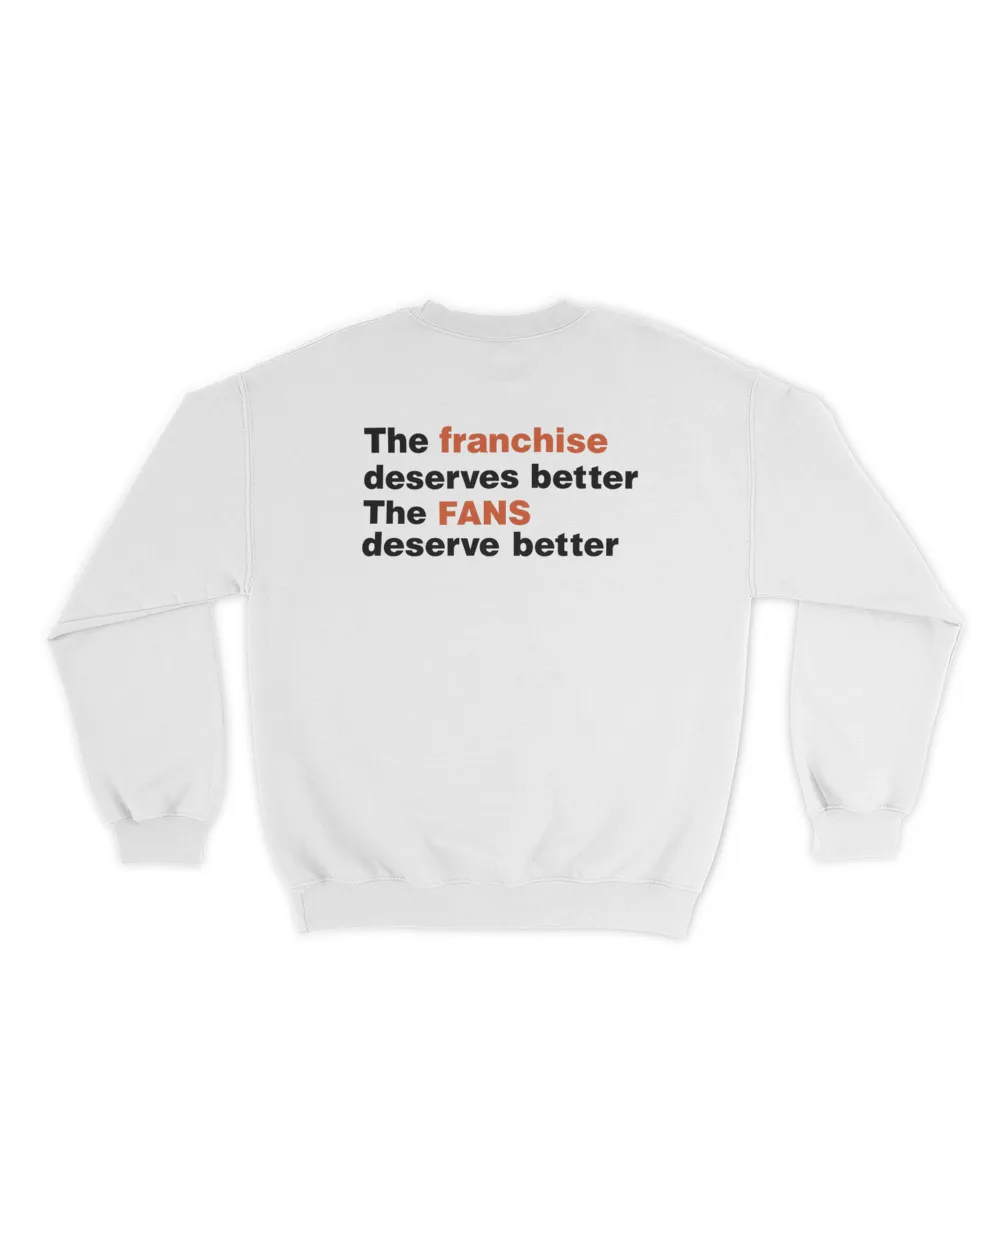 Snowthegoalie The Franchise Deserves Better The Fans Deserve Better Sweatshirt Unisex Sweatshirt white 